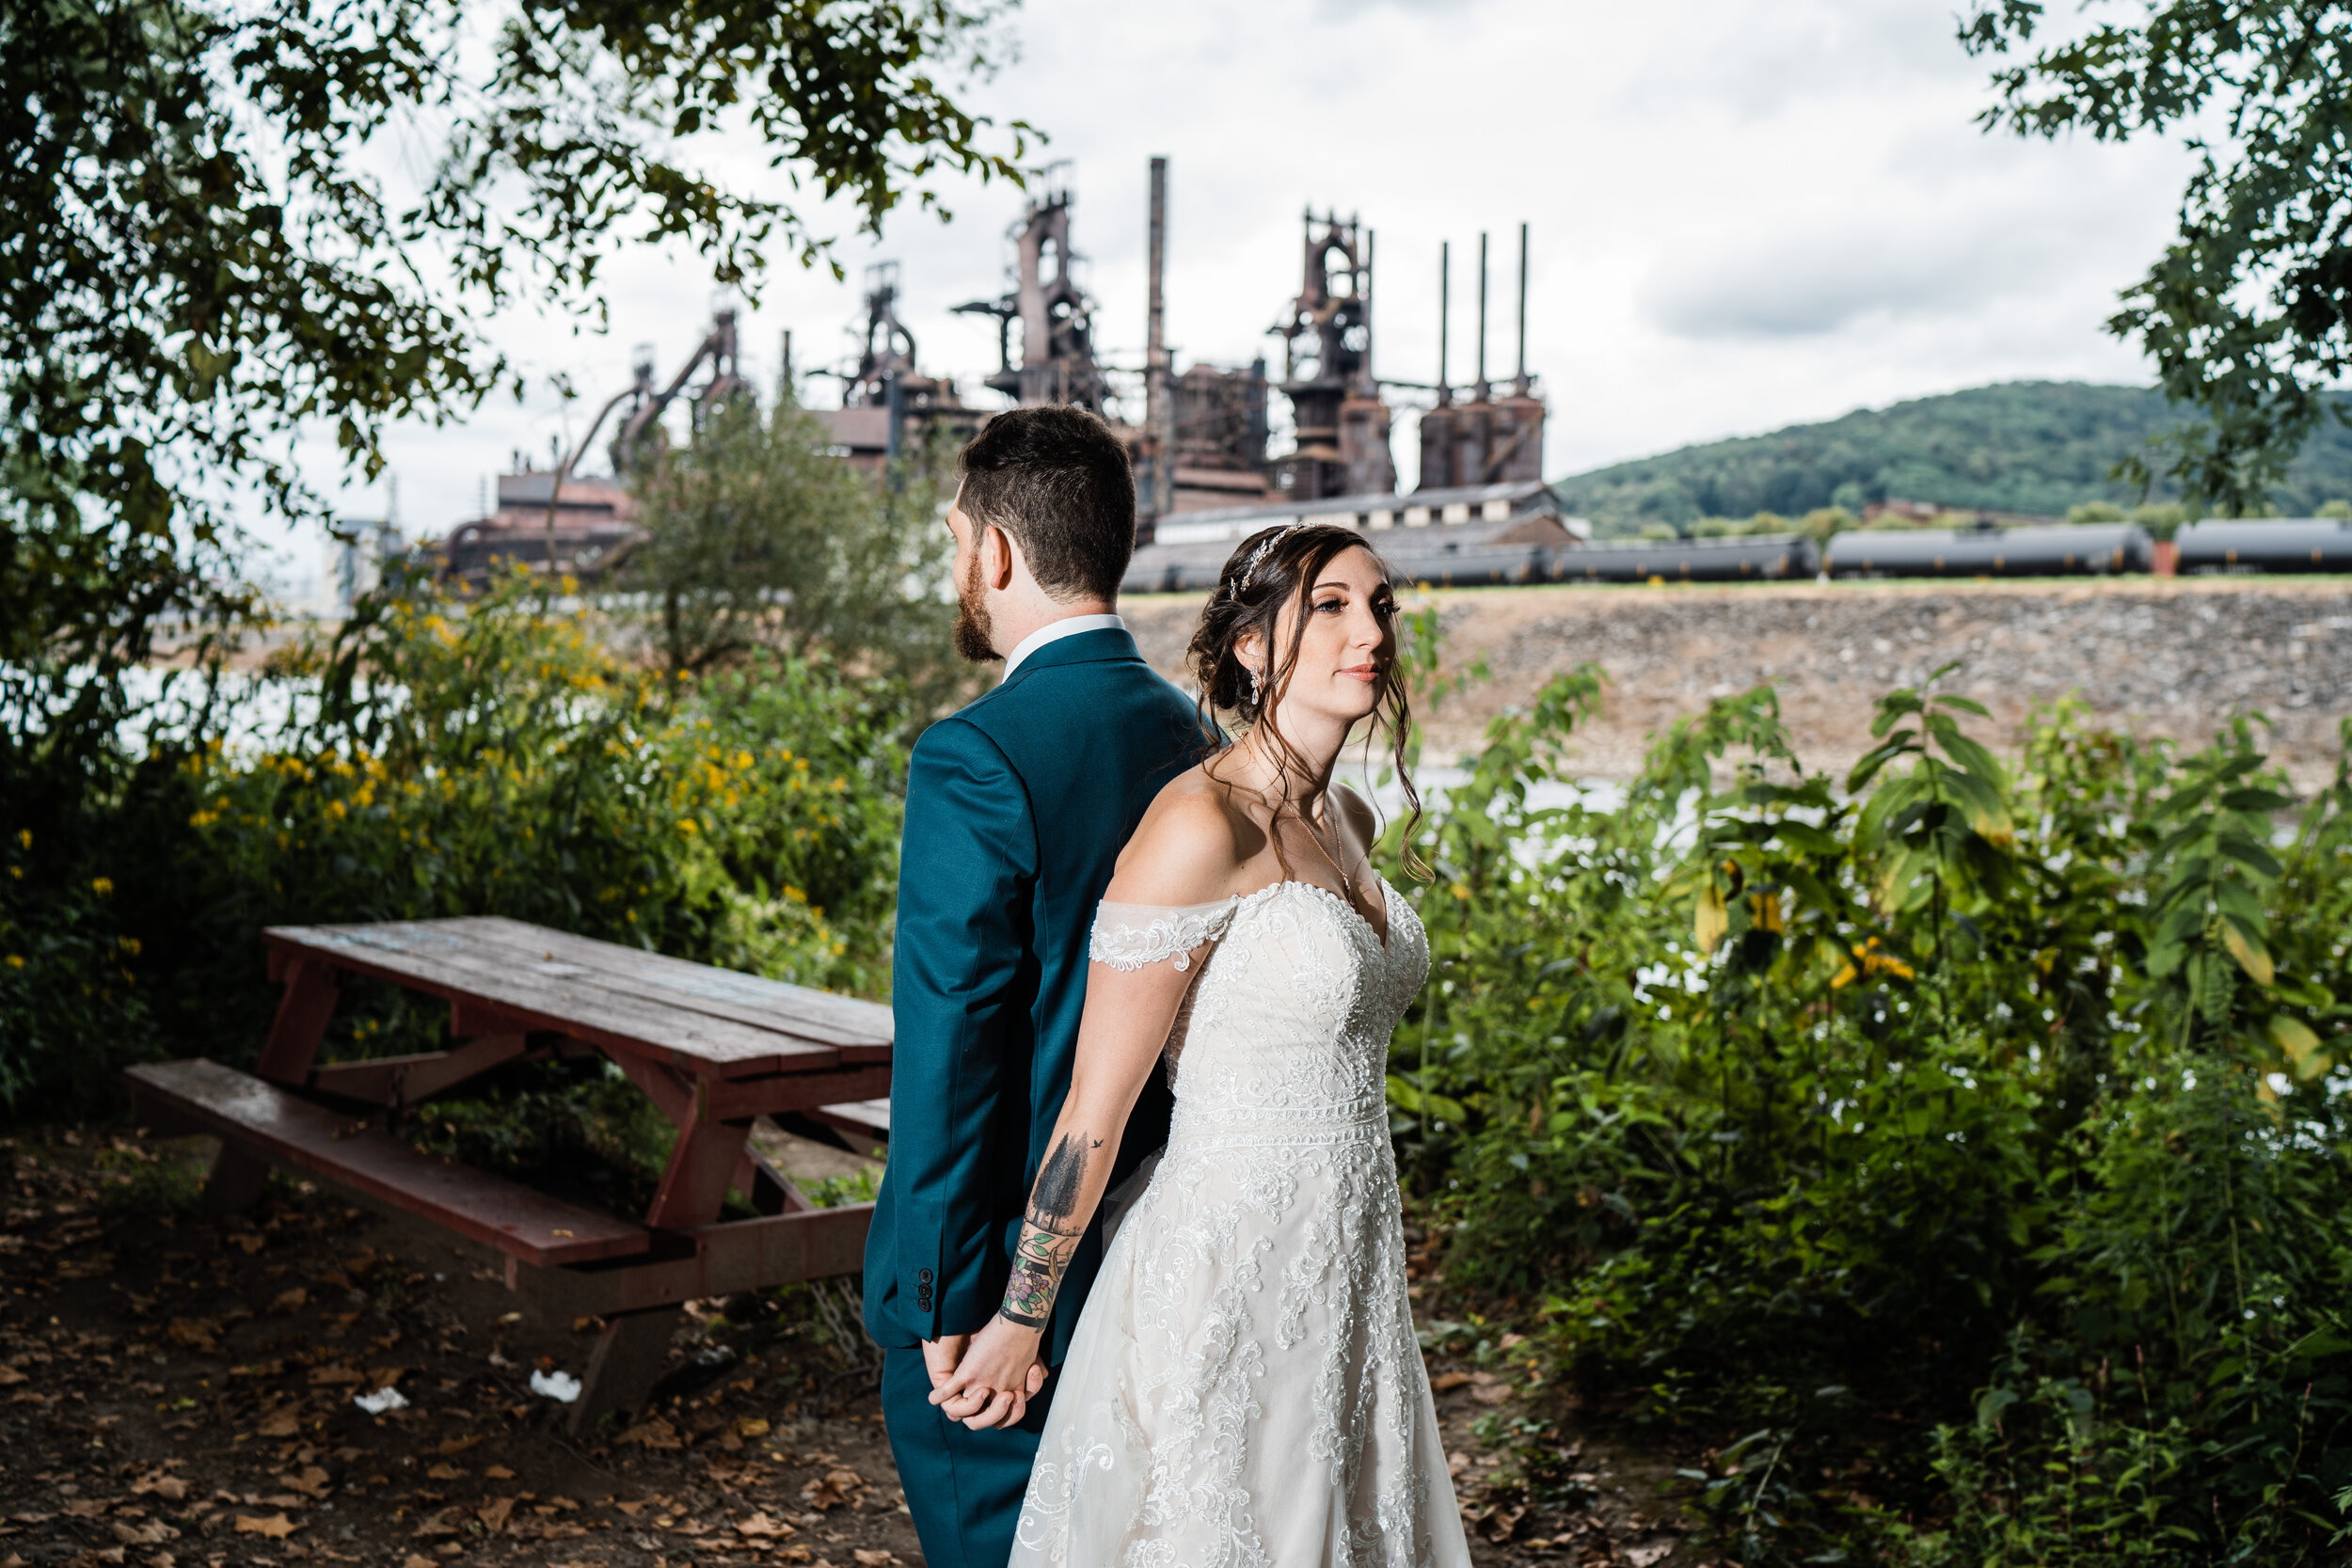 Bethlehem Steel Stacks Wedding Photographer (85 of 644).jpg